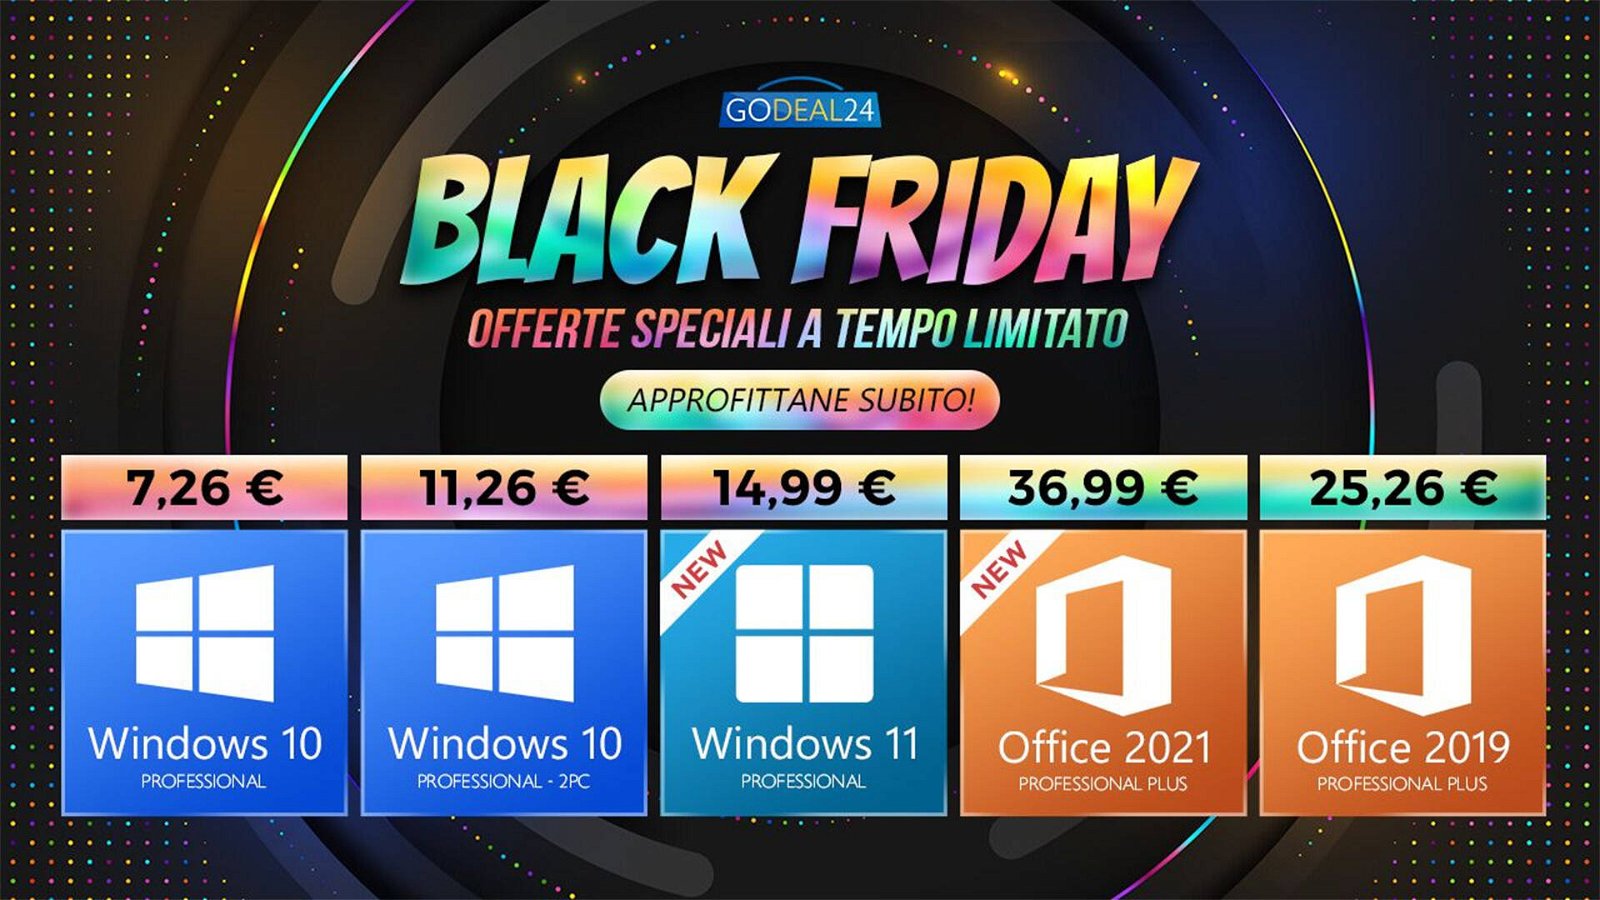 Immagine di Black Friday in anticipo su GoDeal24: Windows 10 a soli 7€